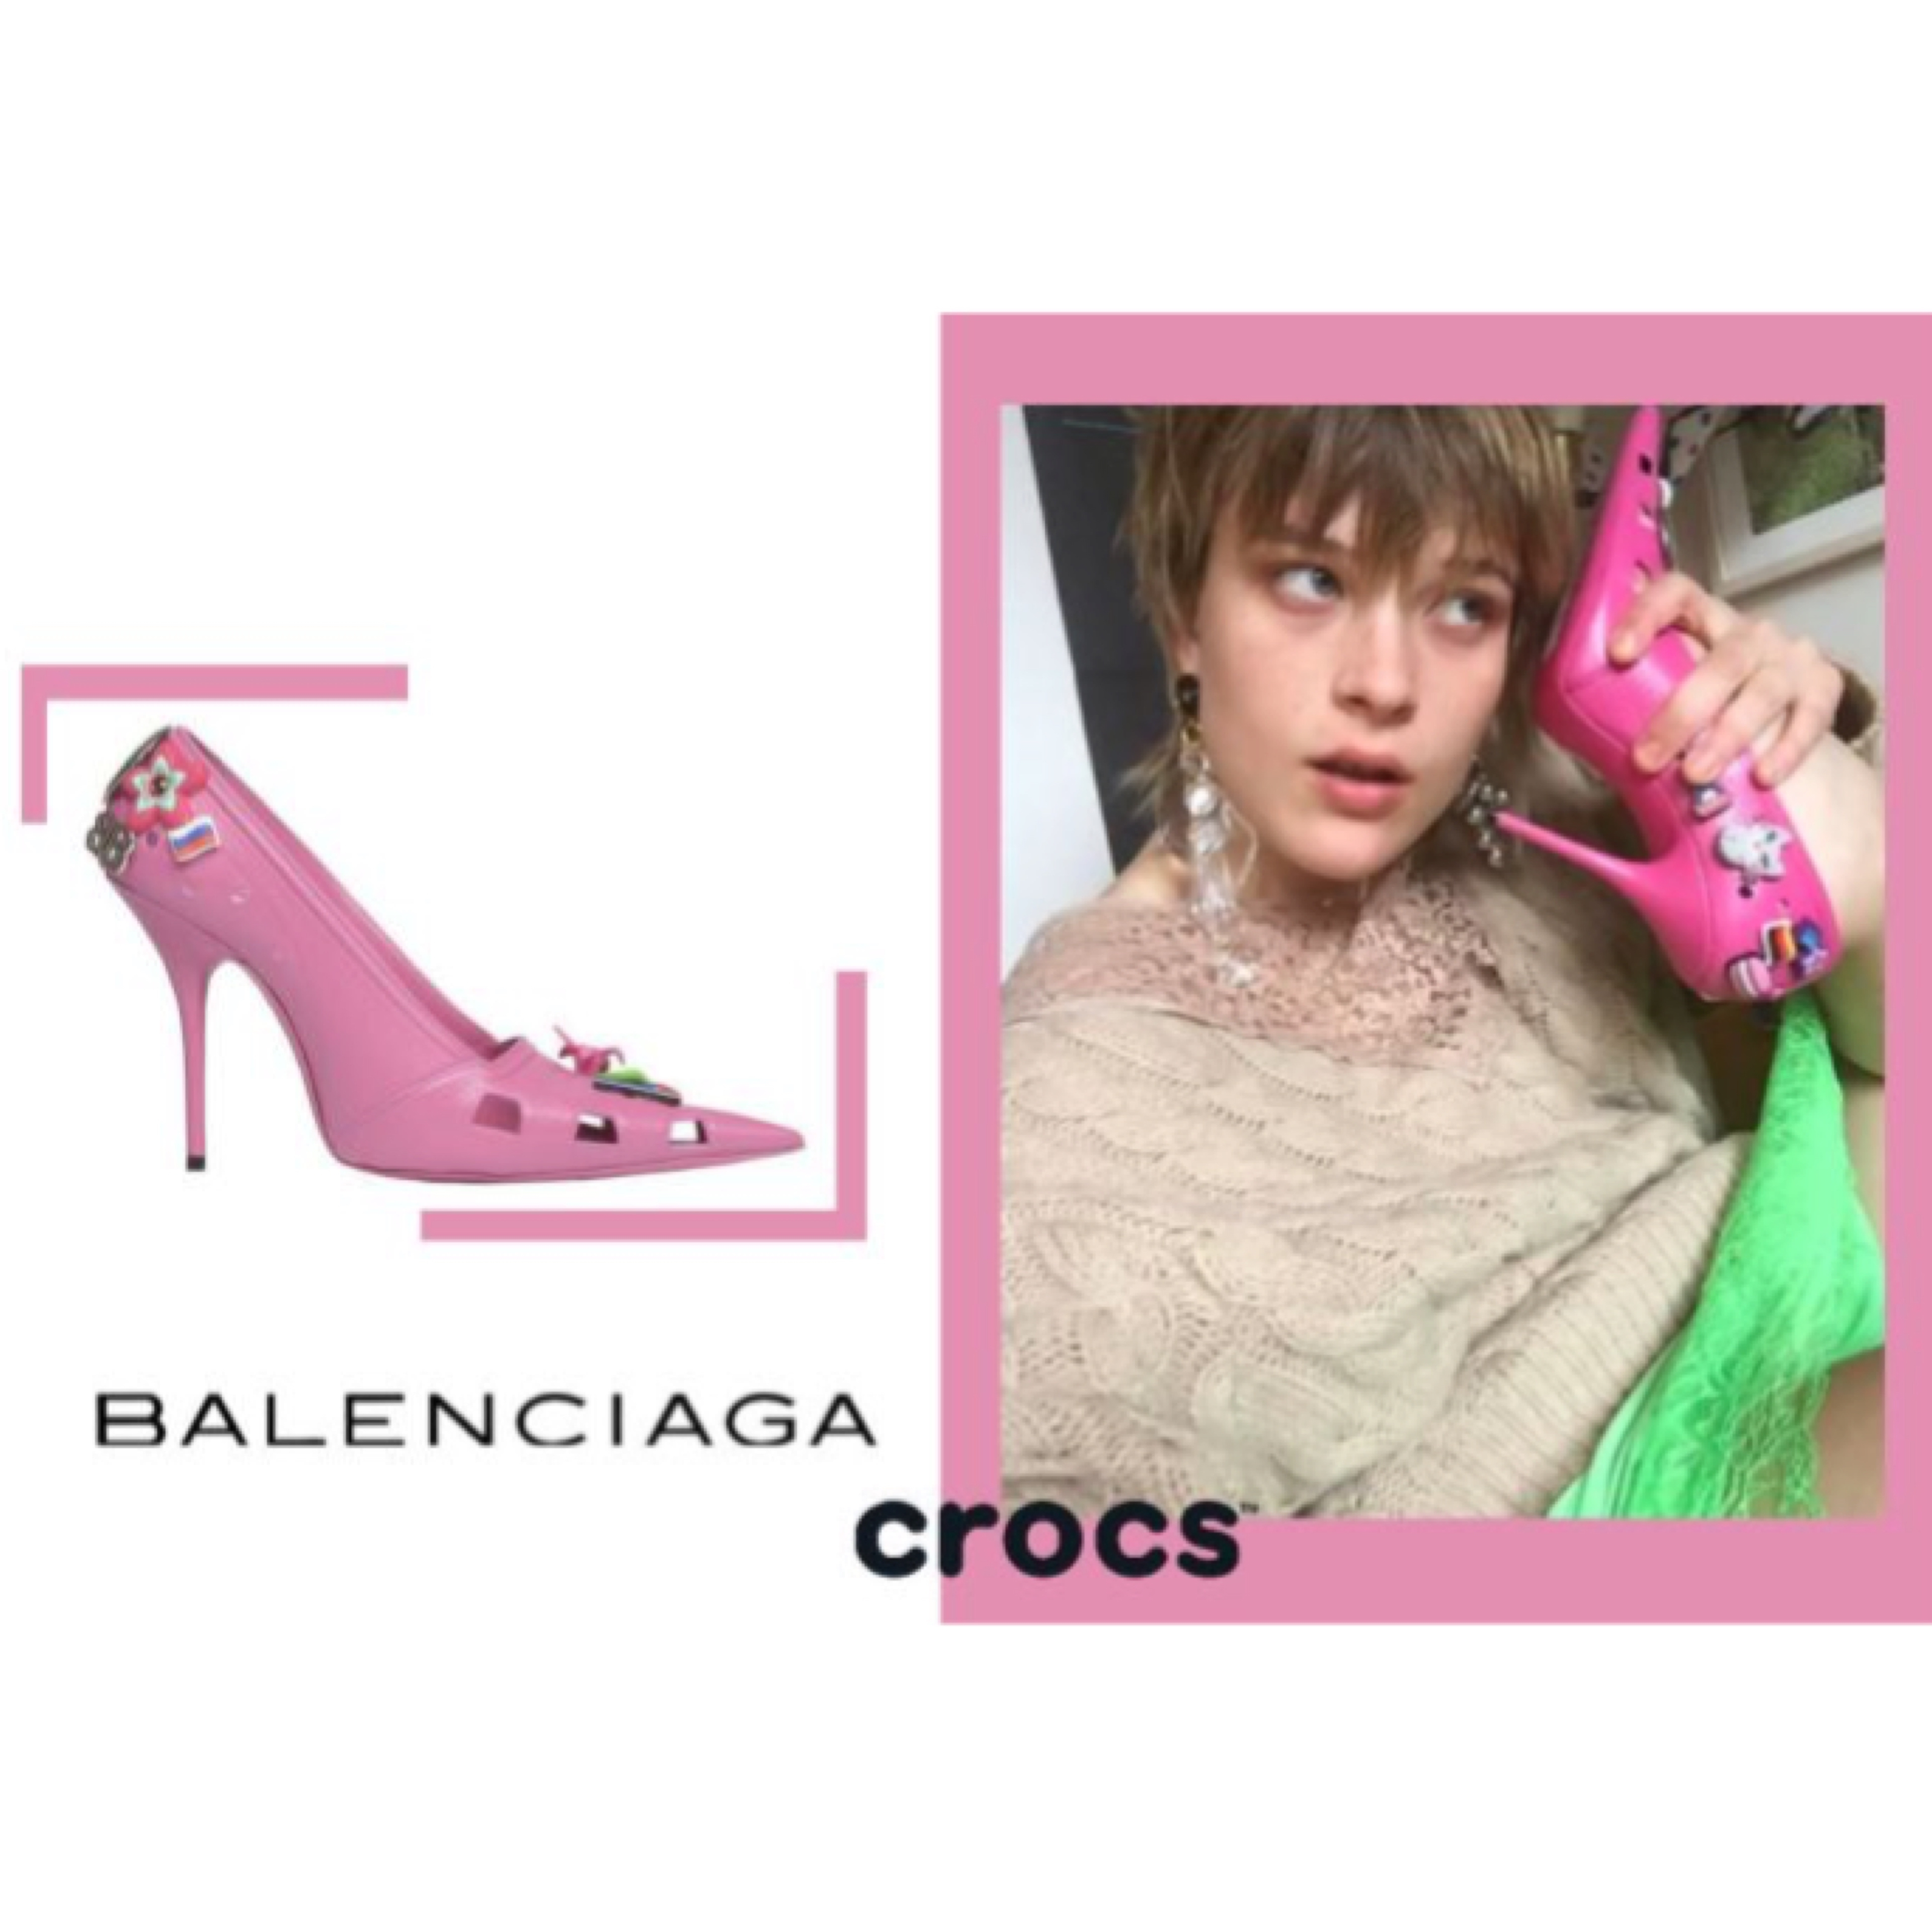 芭比娃娃的高跟鞋成真了！Balenciaga 與 Crocs 聯手推出最夢幻粉紅膠鞋